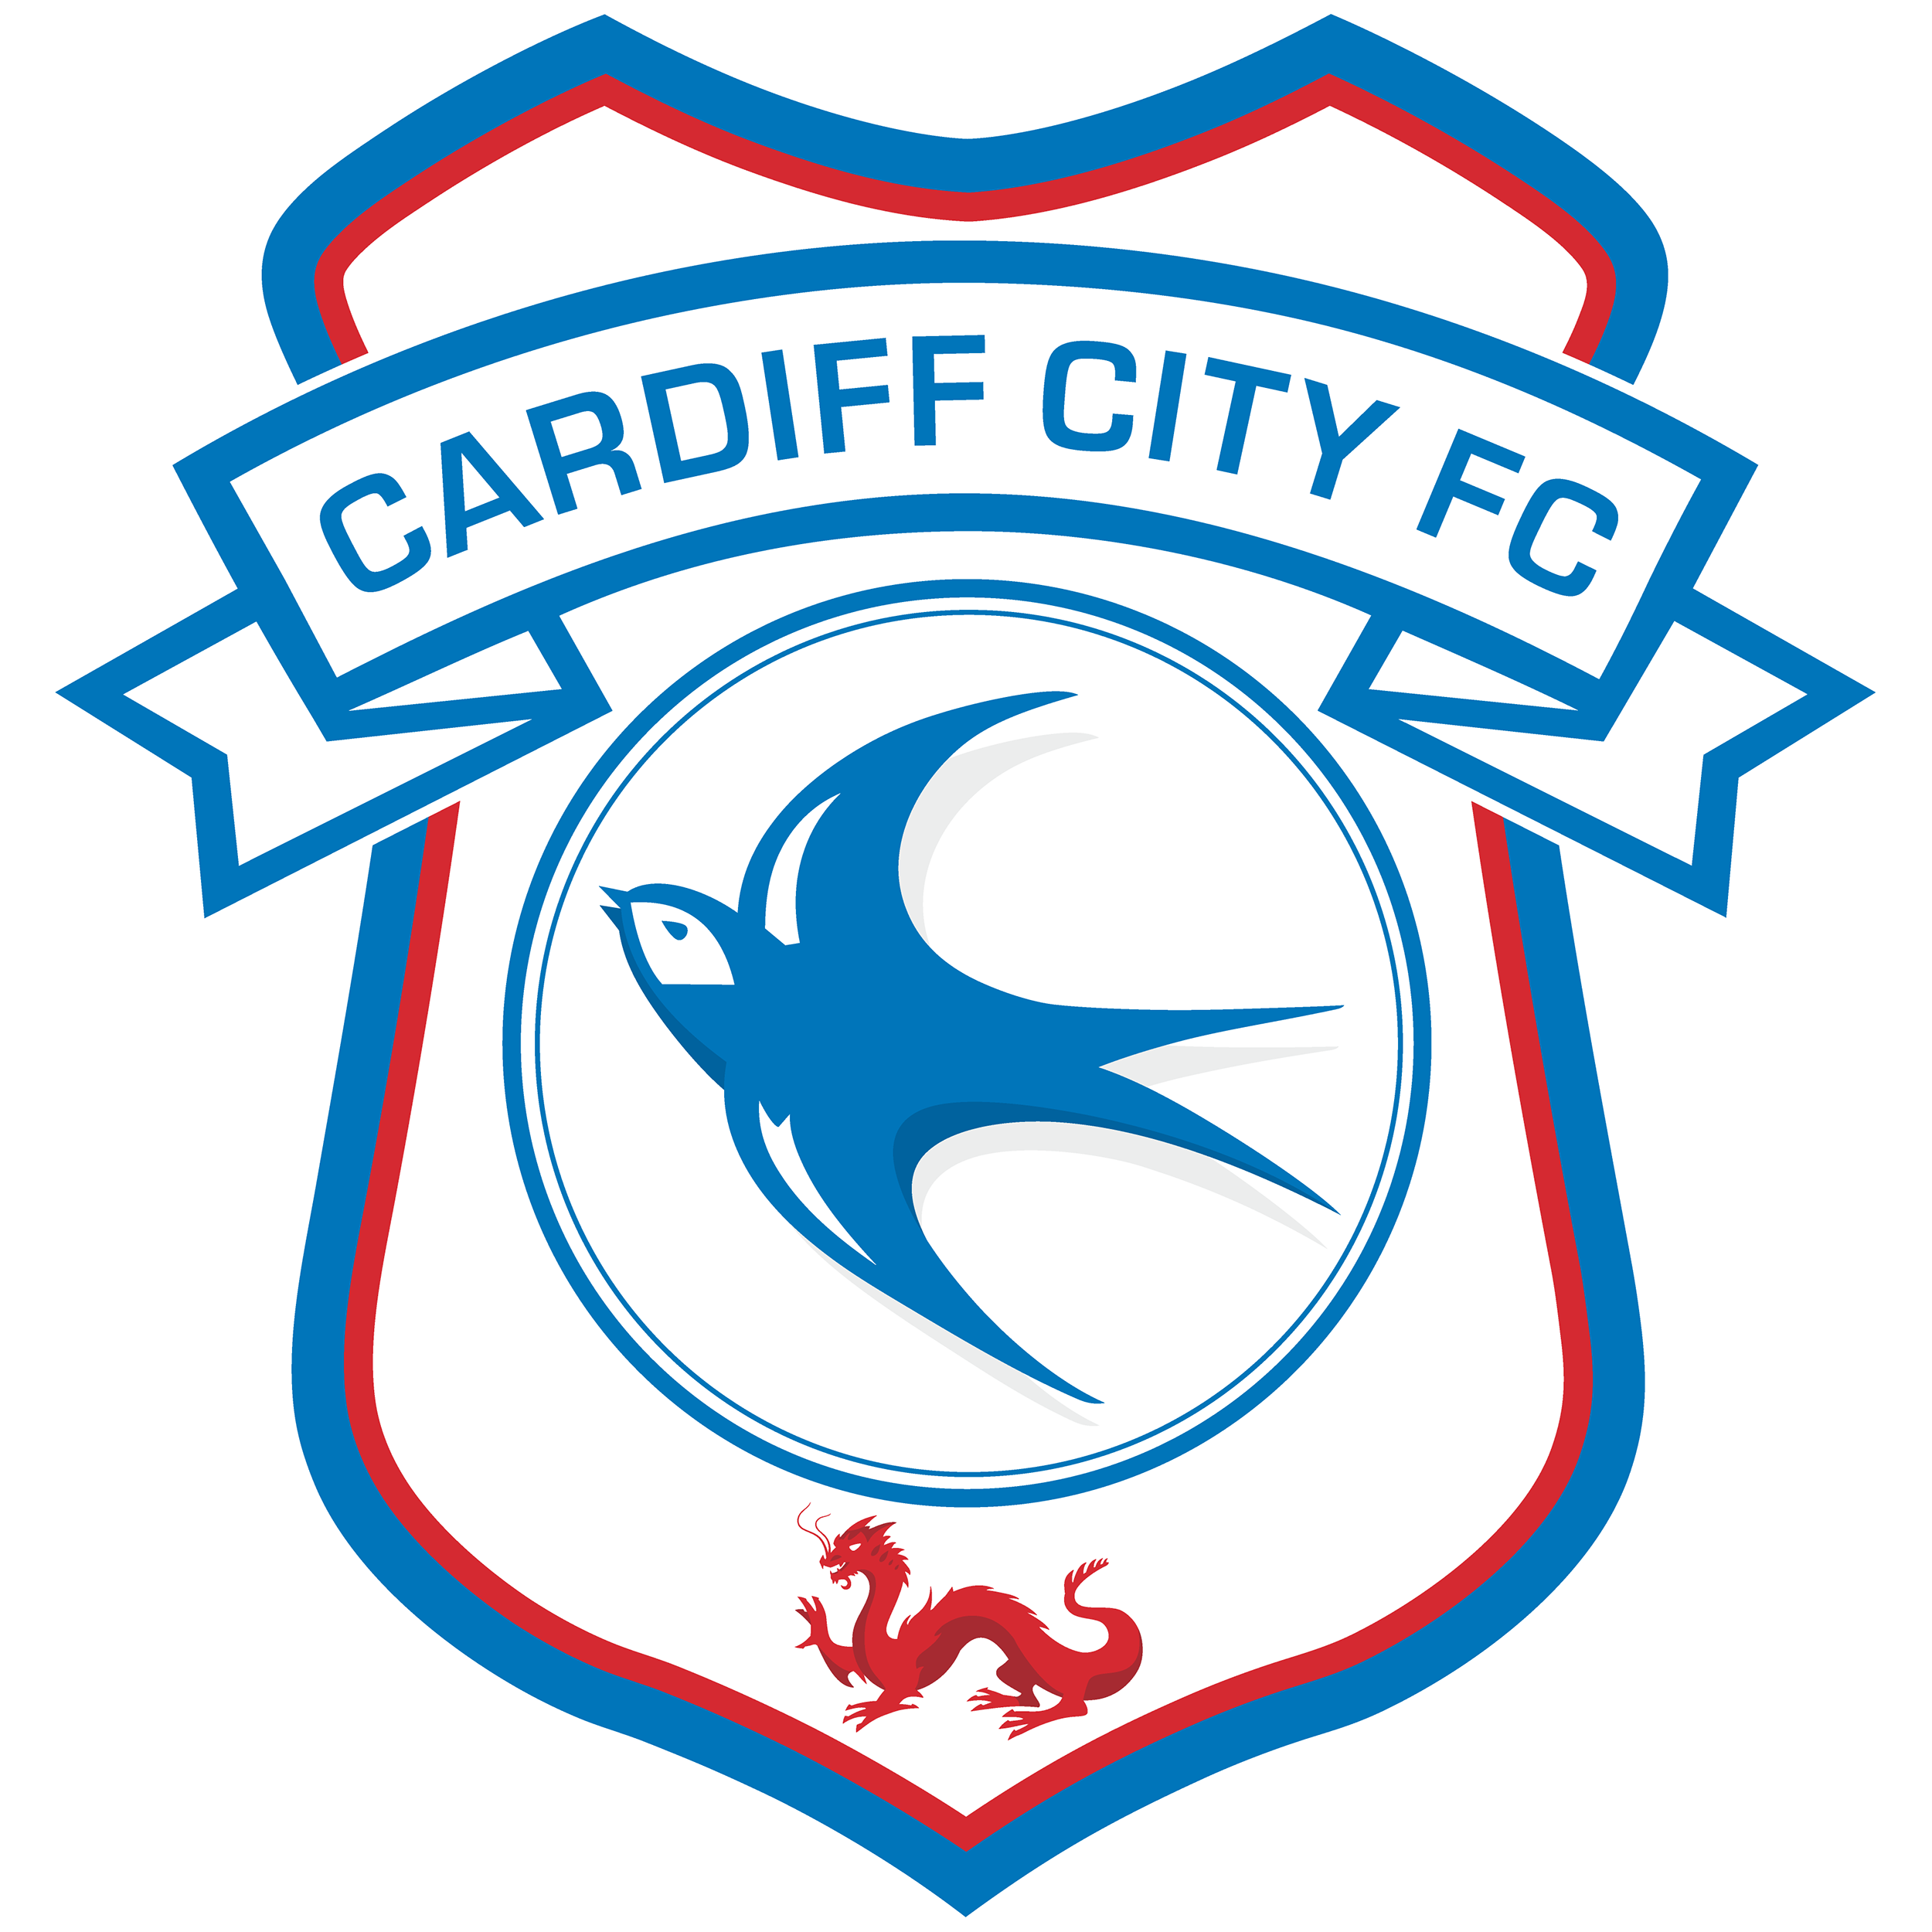 Immagine Trasparente del logo della città di Cardiff City f